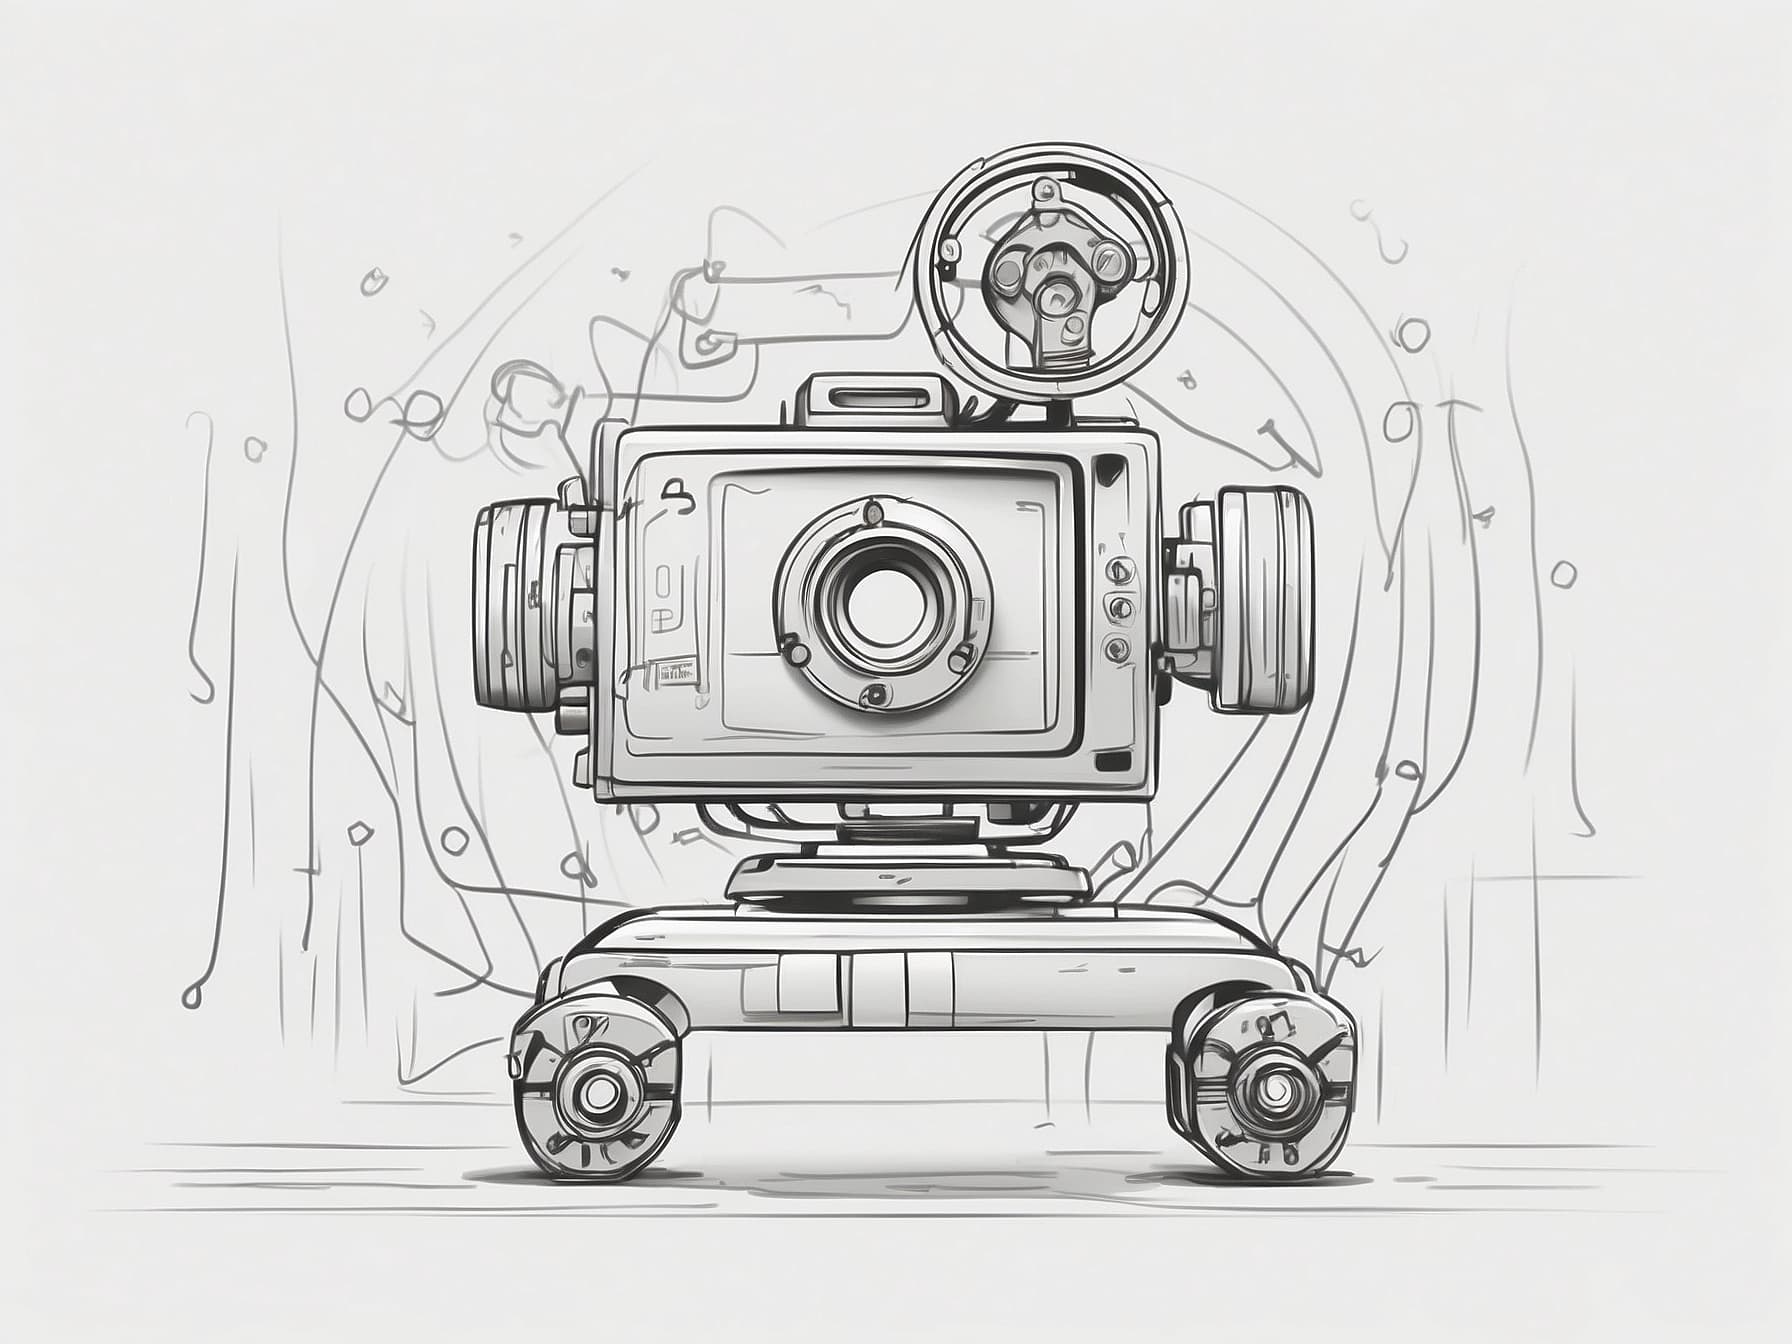 Darstellung von einer automatisierten Kamera